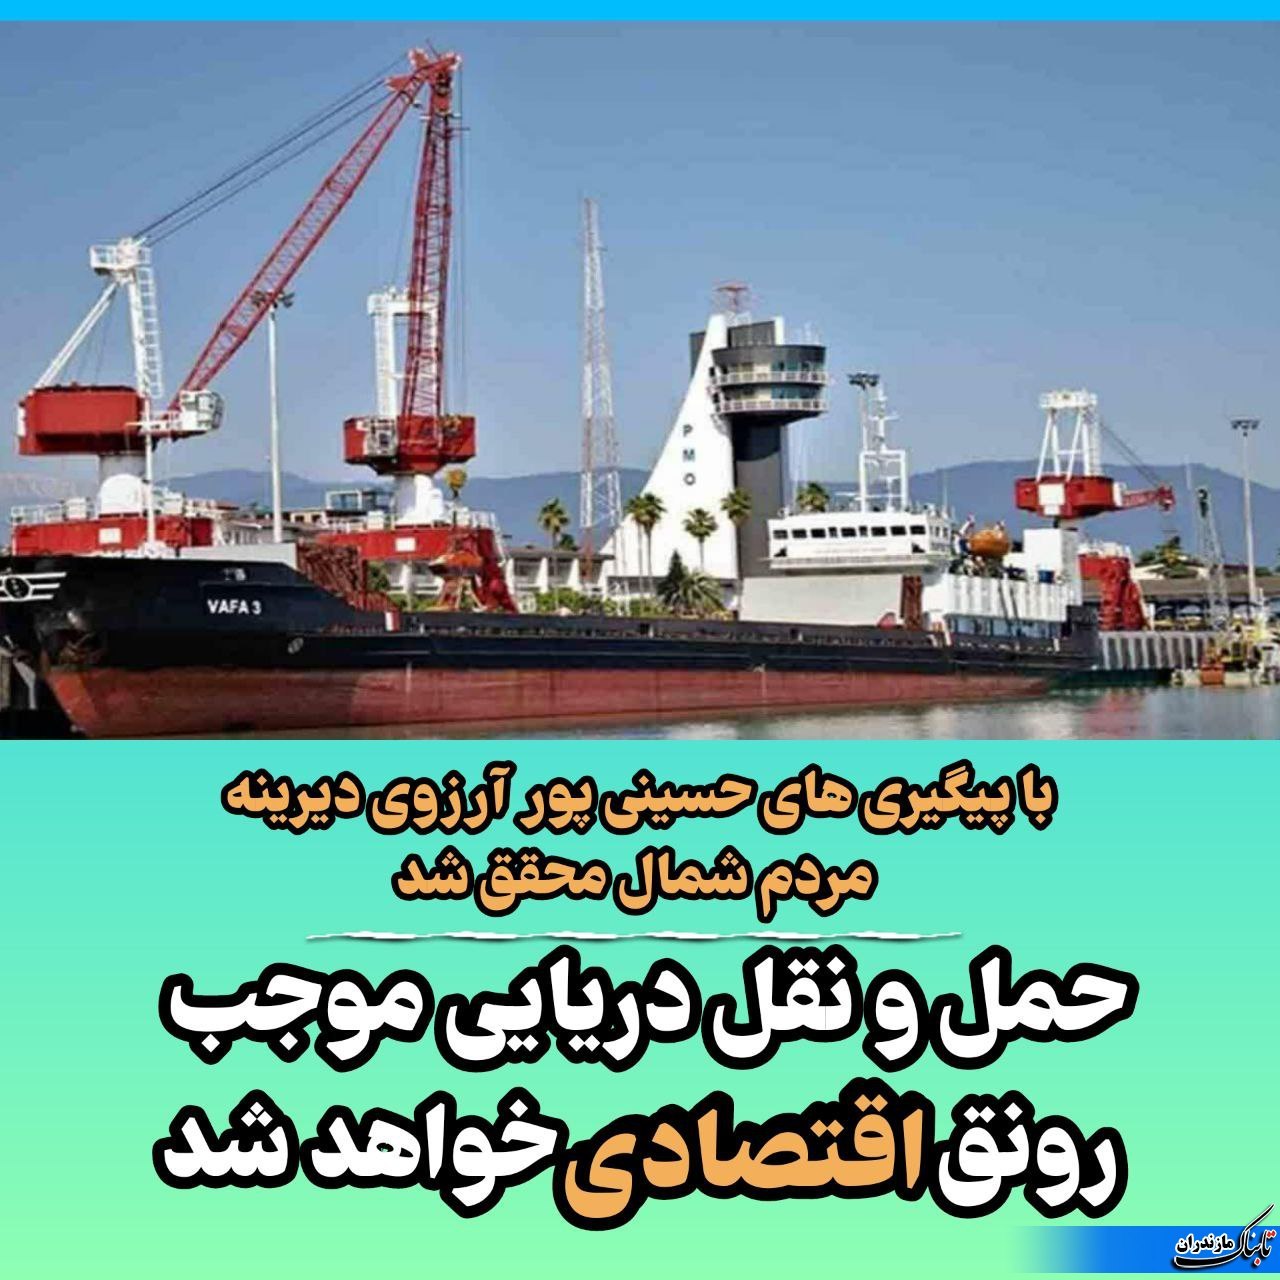 راه اندازی کشتی های مسافربری در دریاهای مازندران